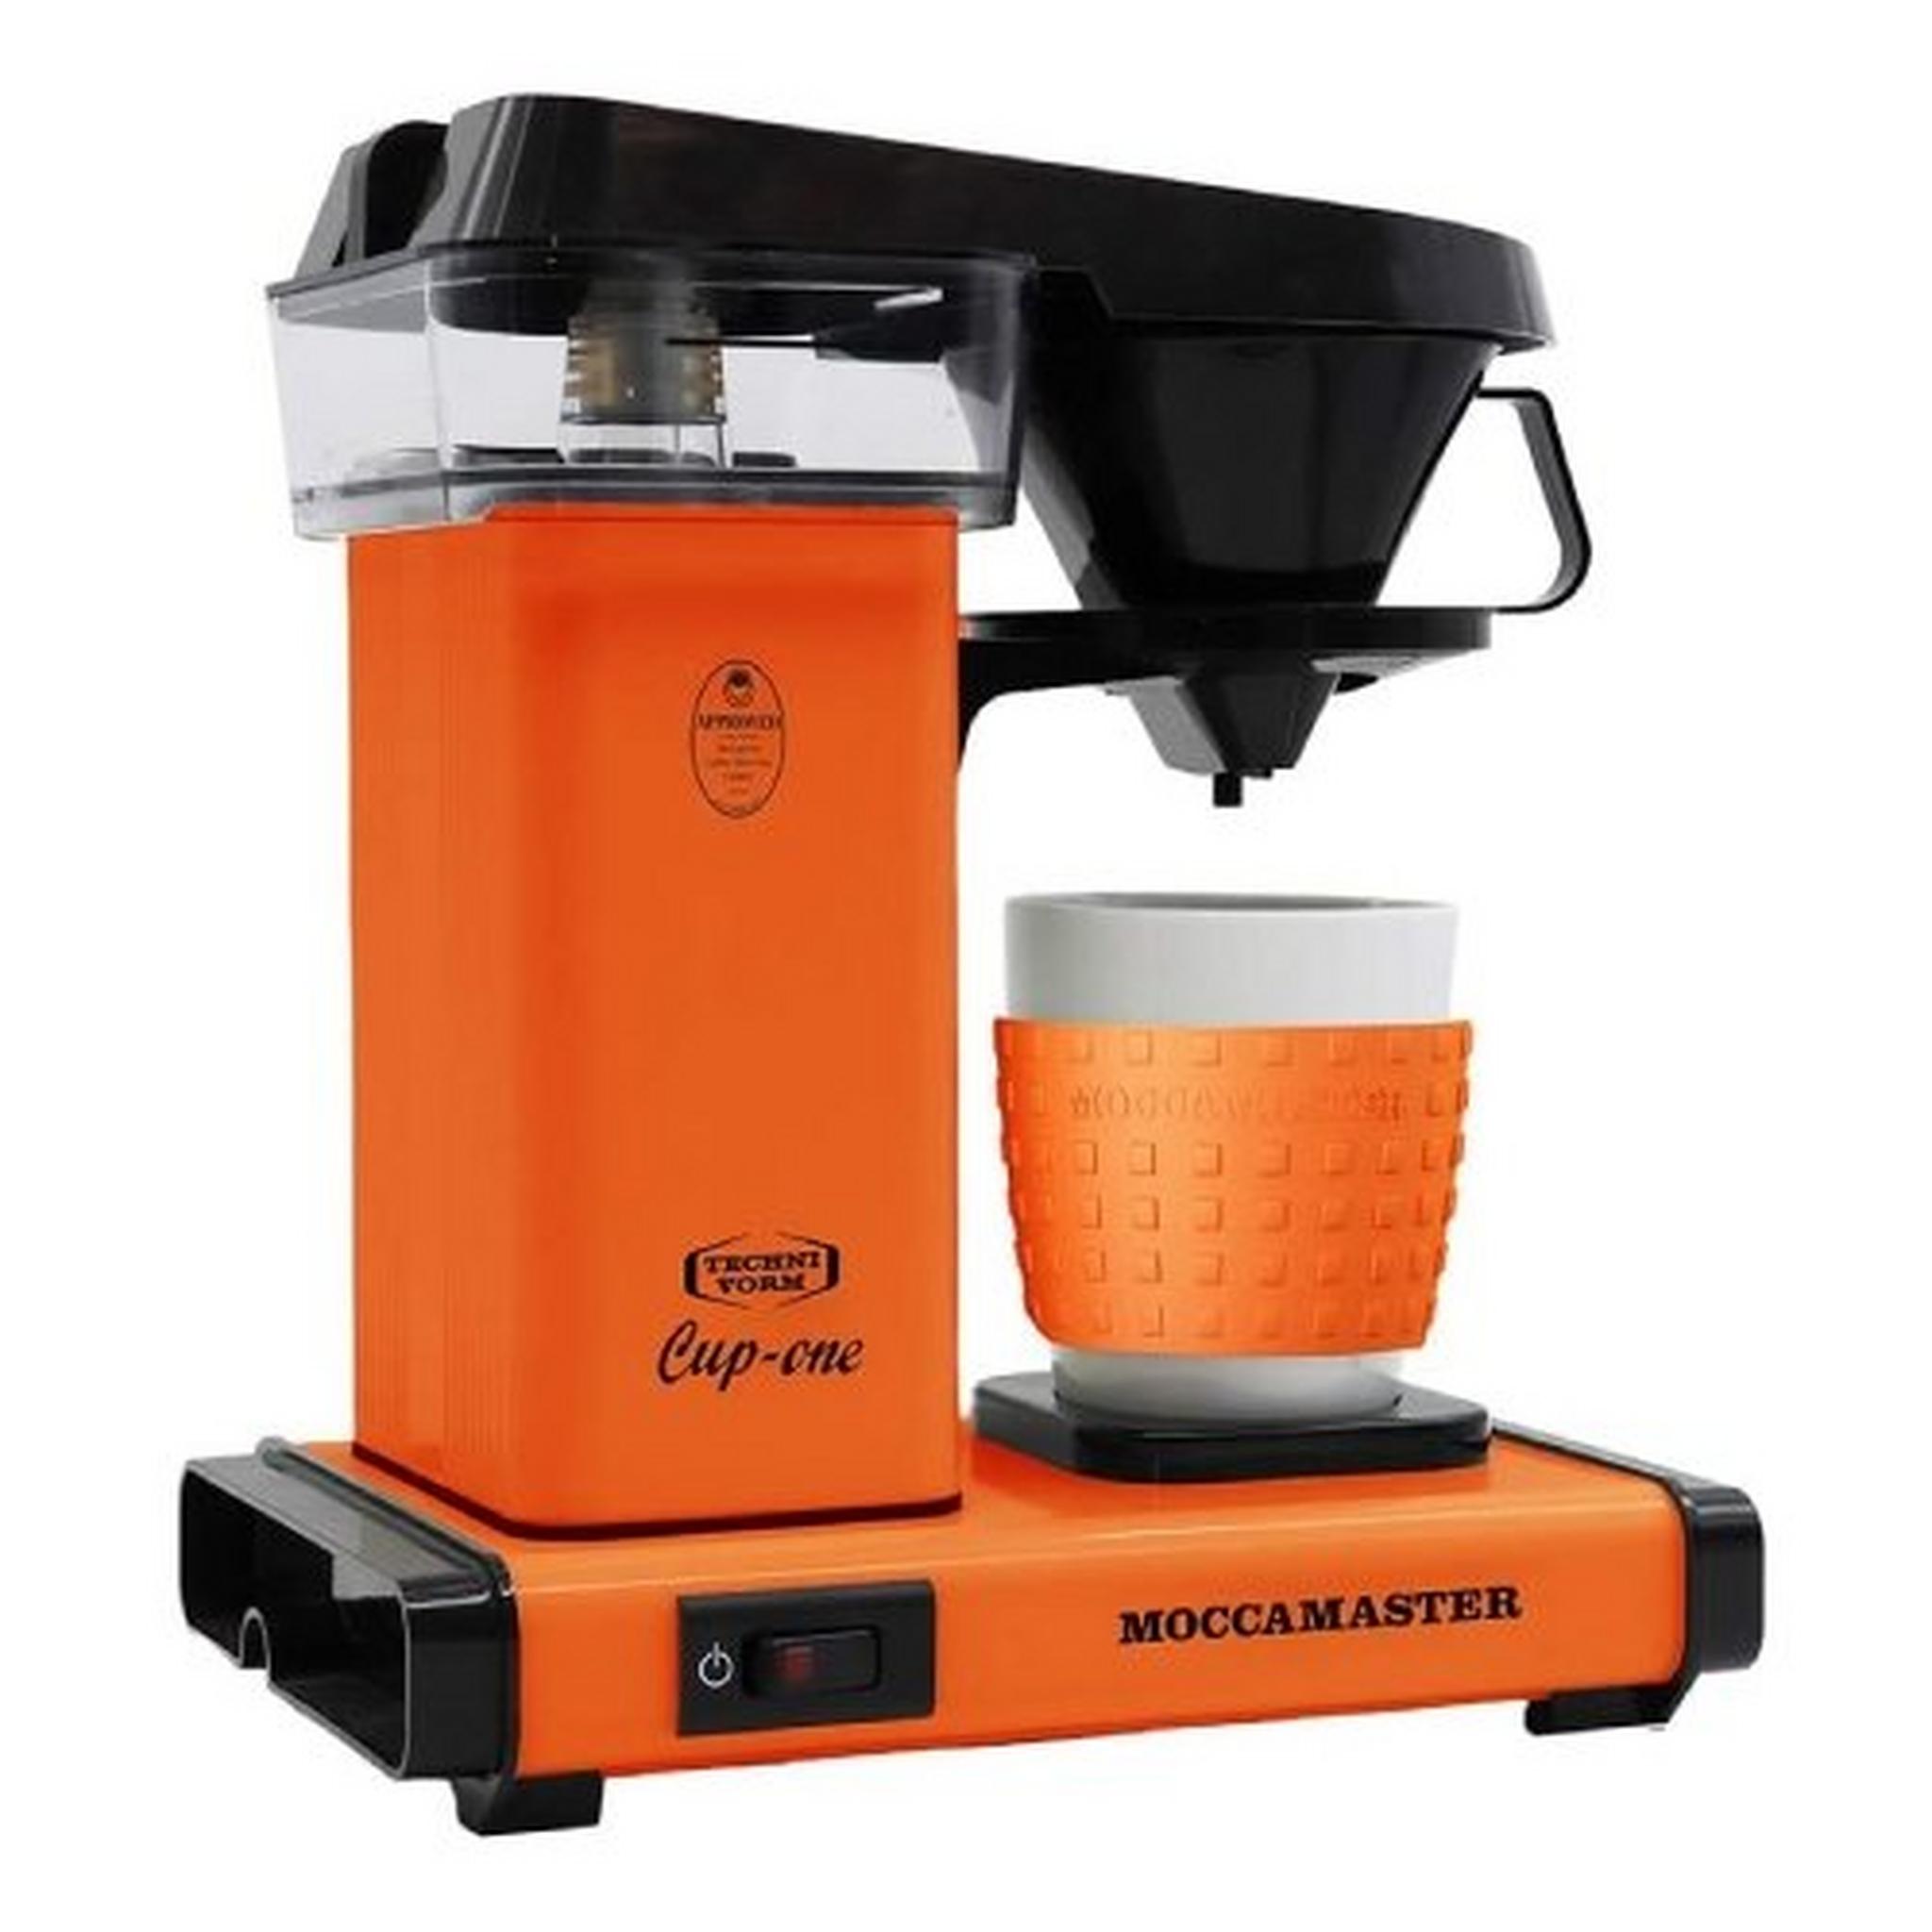 صانعة القهوة موكاماستر  Cup One 1090 واط - برتقالي